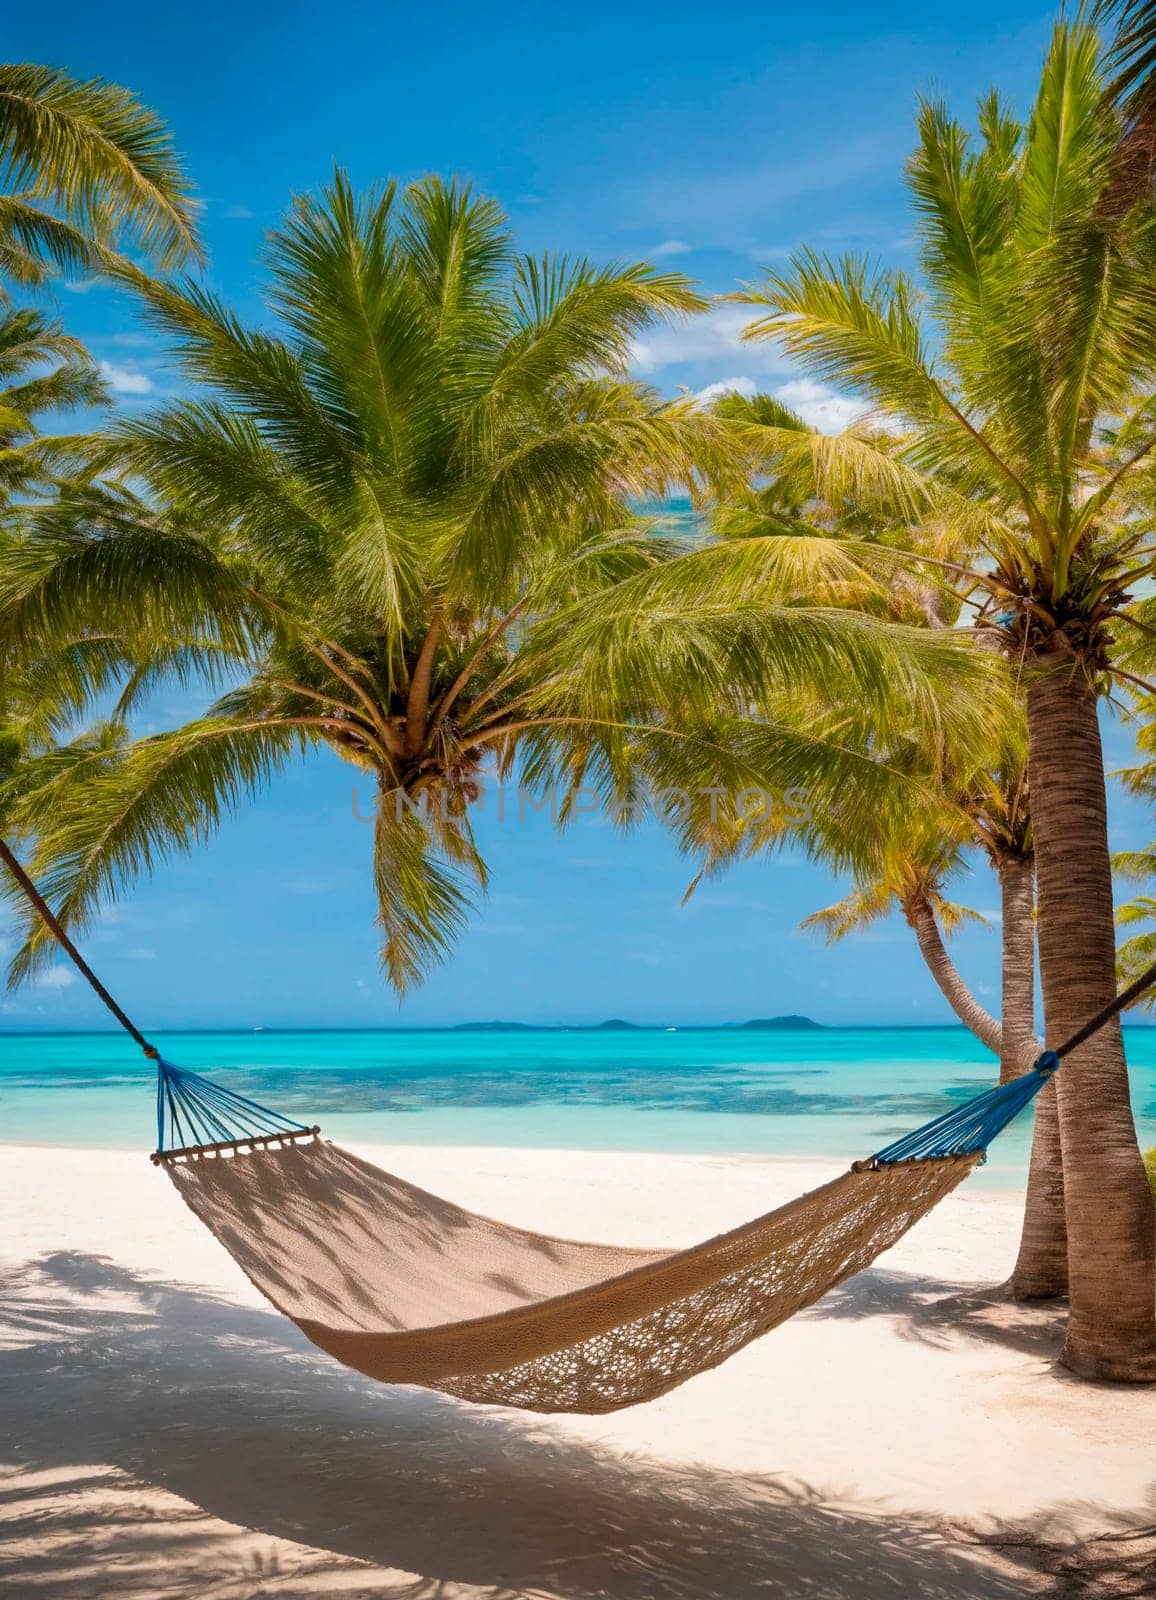 hammock on a tropical beach. Selective focus. by yanadjana